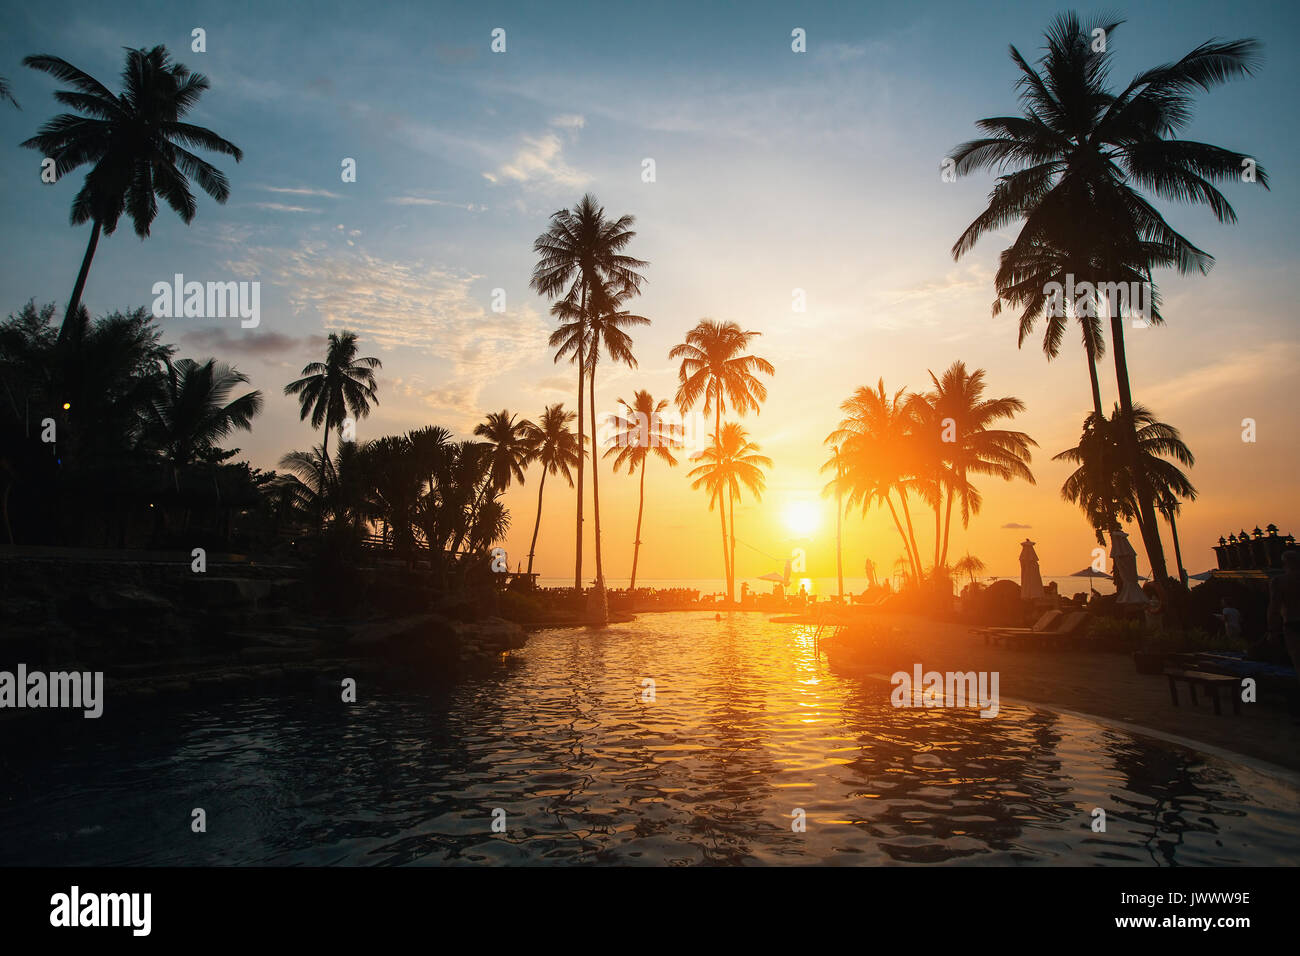 Silhouettes de palmiers sur une plage tropicale pendant le coucher du soleil. Banque D'Images